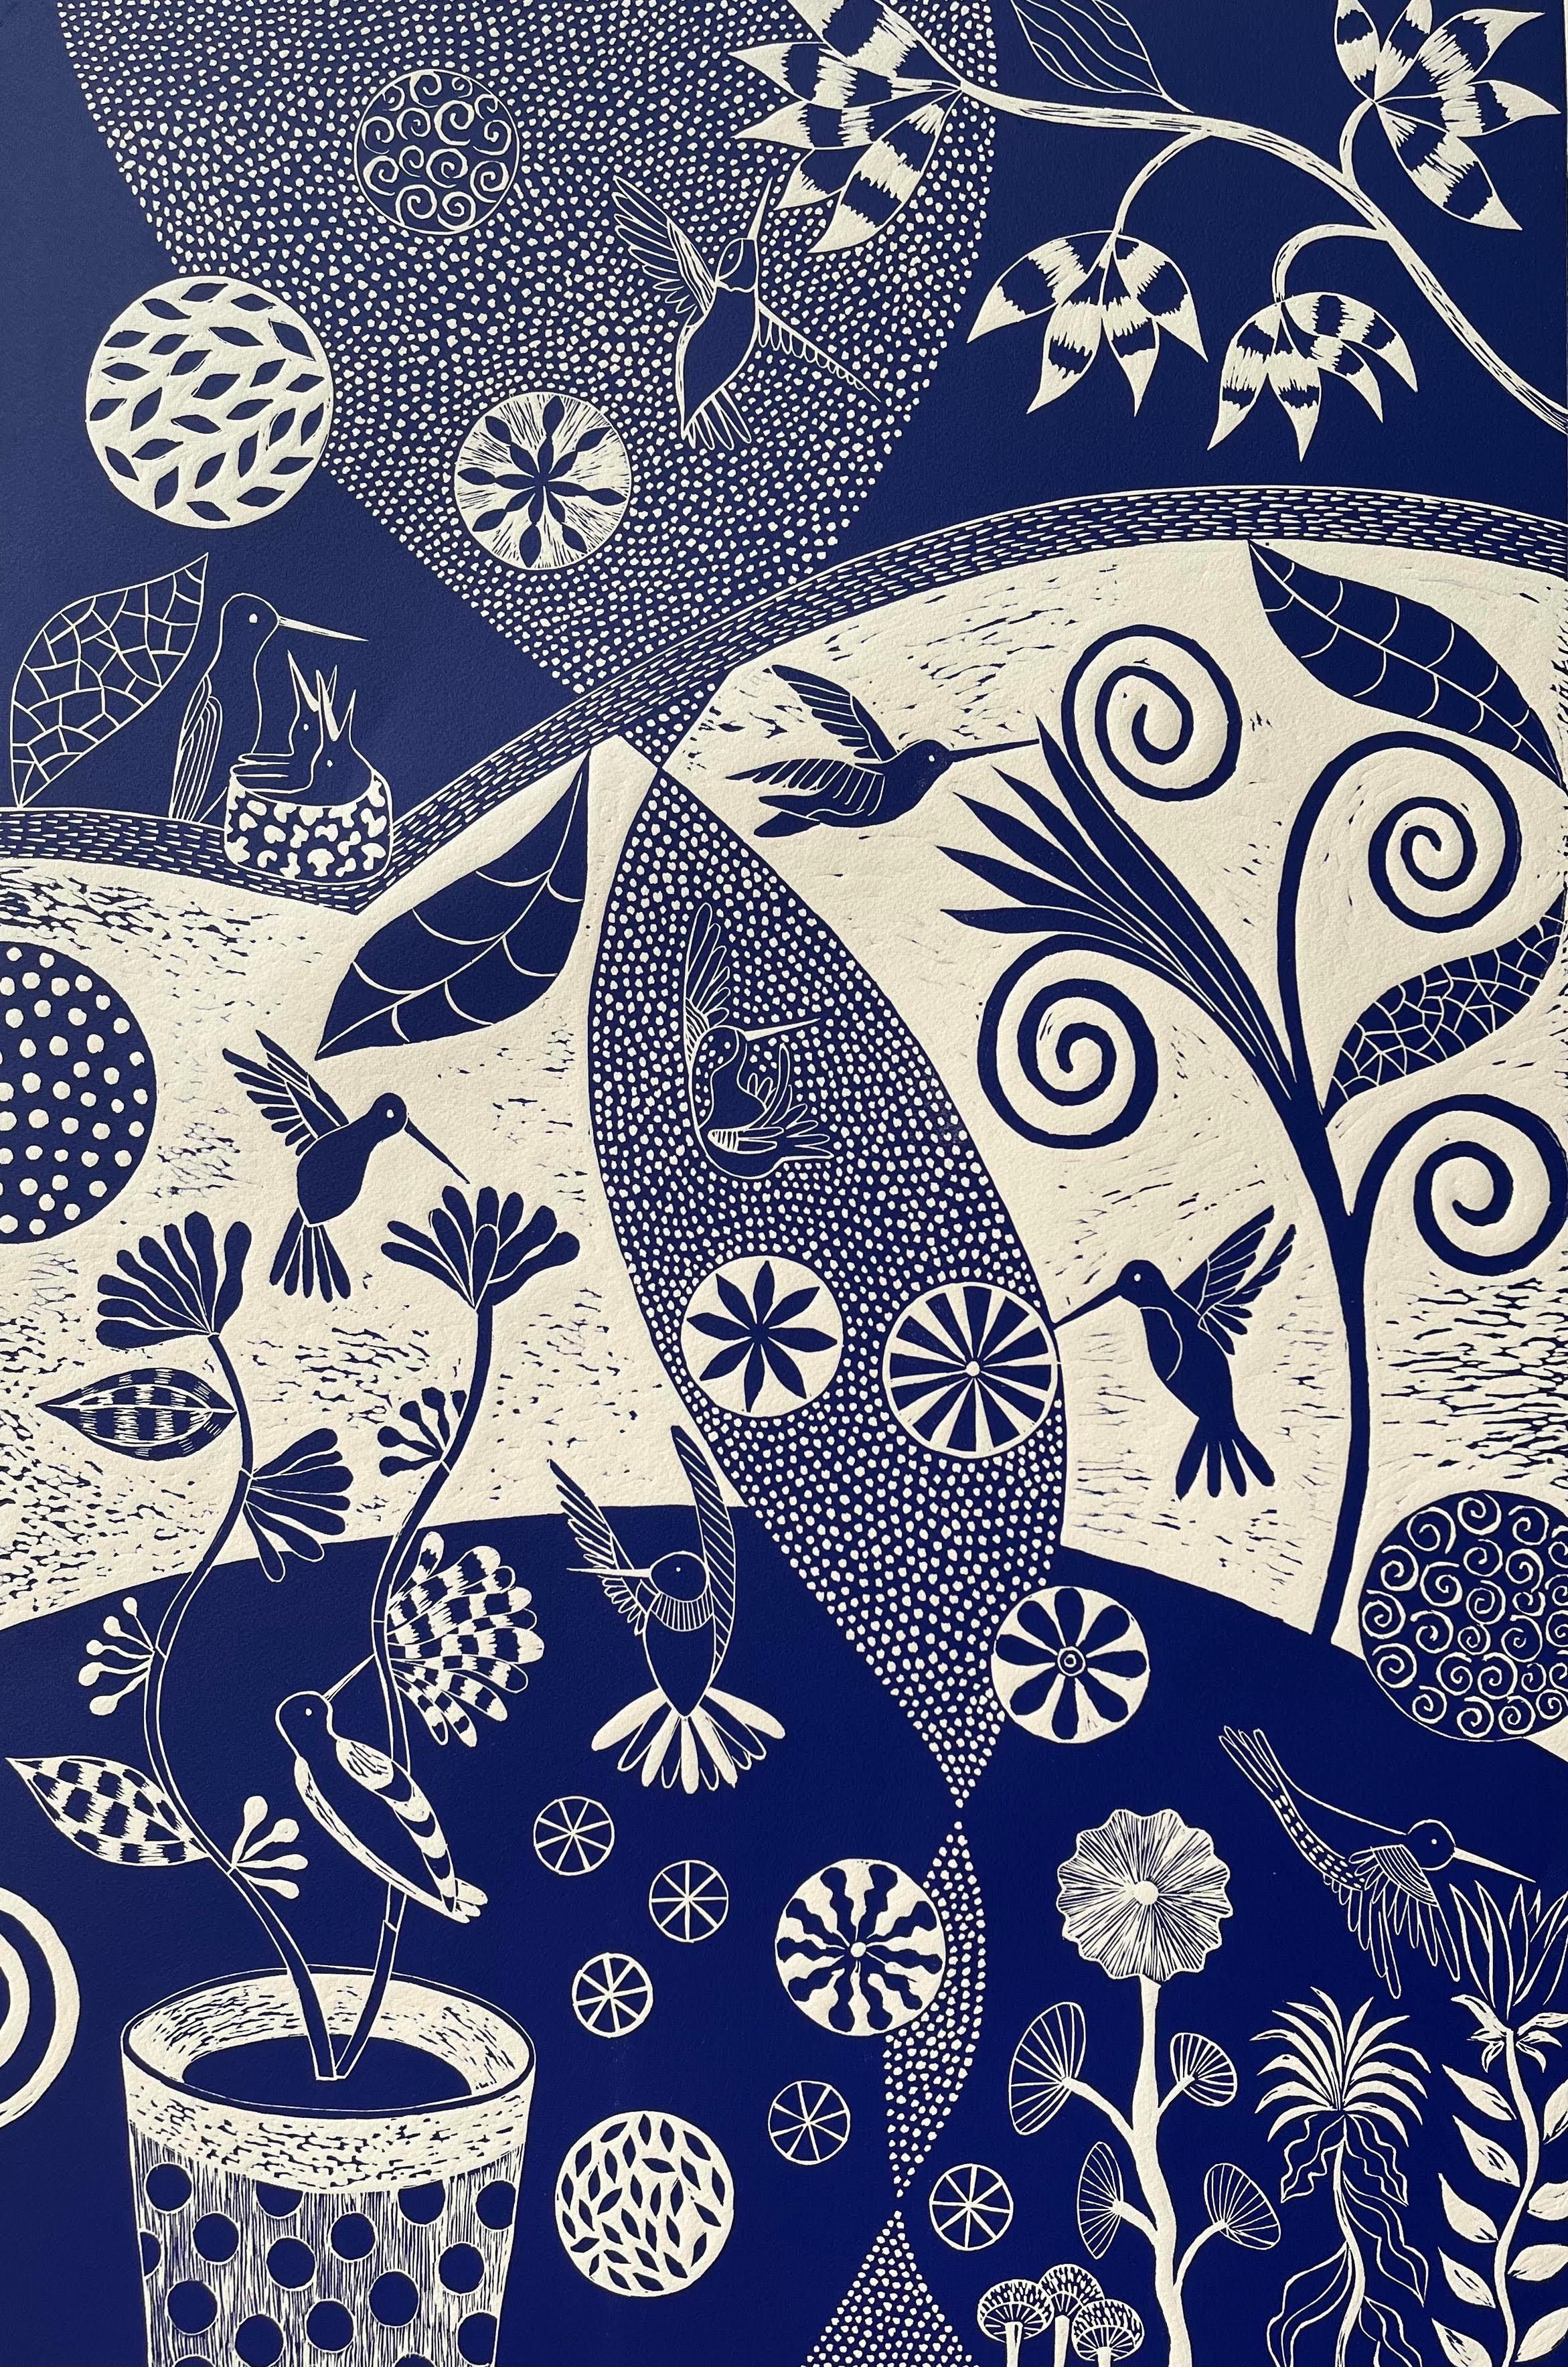 
Lisa Houck ist eine etablierte Künstlerin aus Boston, die vor kurzem nach Maine umgezogen ist. Ihre außergewöhnlichen Gemälde, Aquarelle, Mosaike und Drucke, die an die Volkskunst, Matisse und die Kunst der Aborigines erinnern, haben eine große